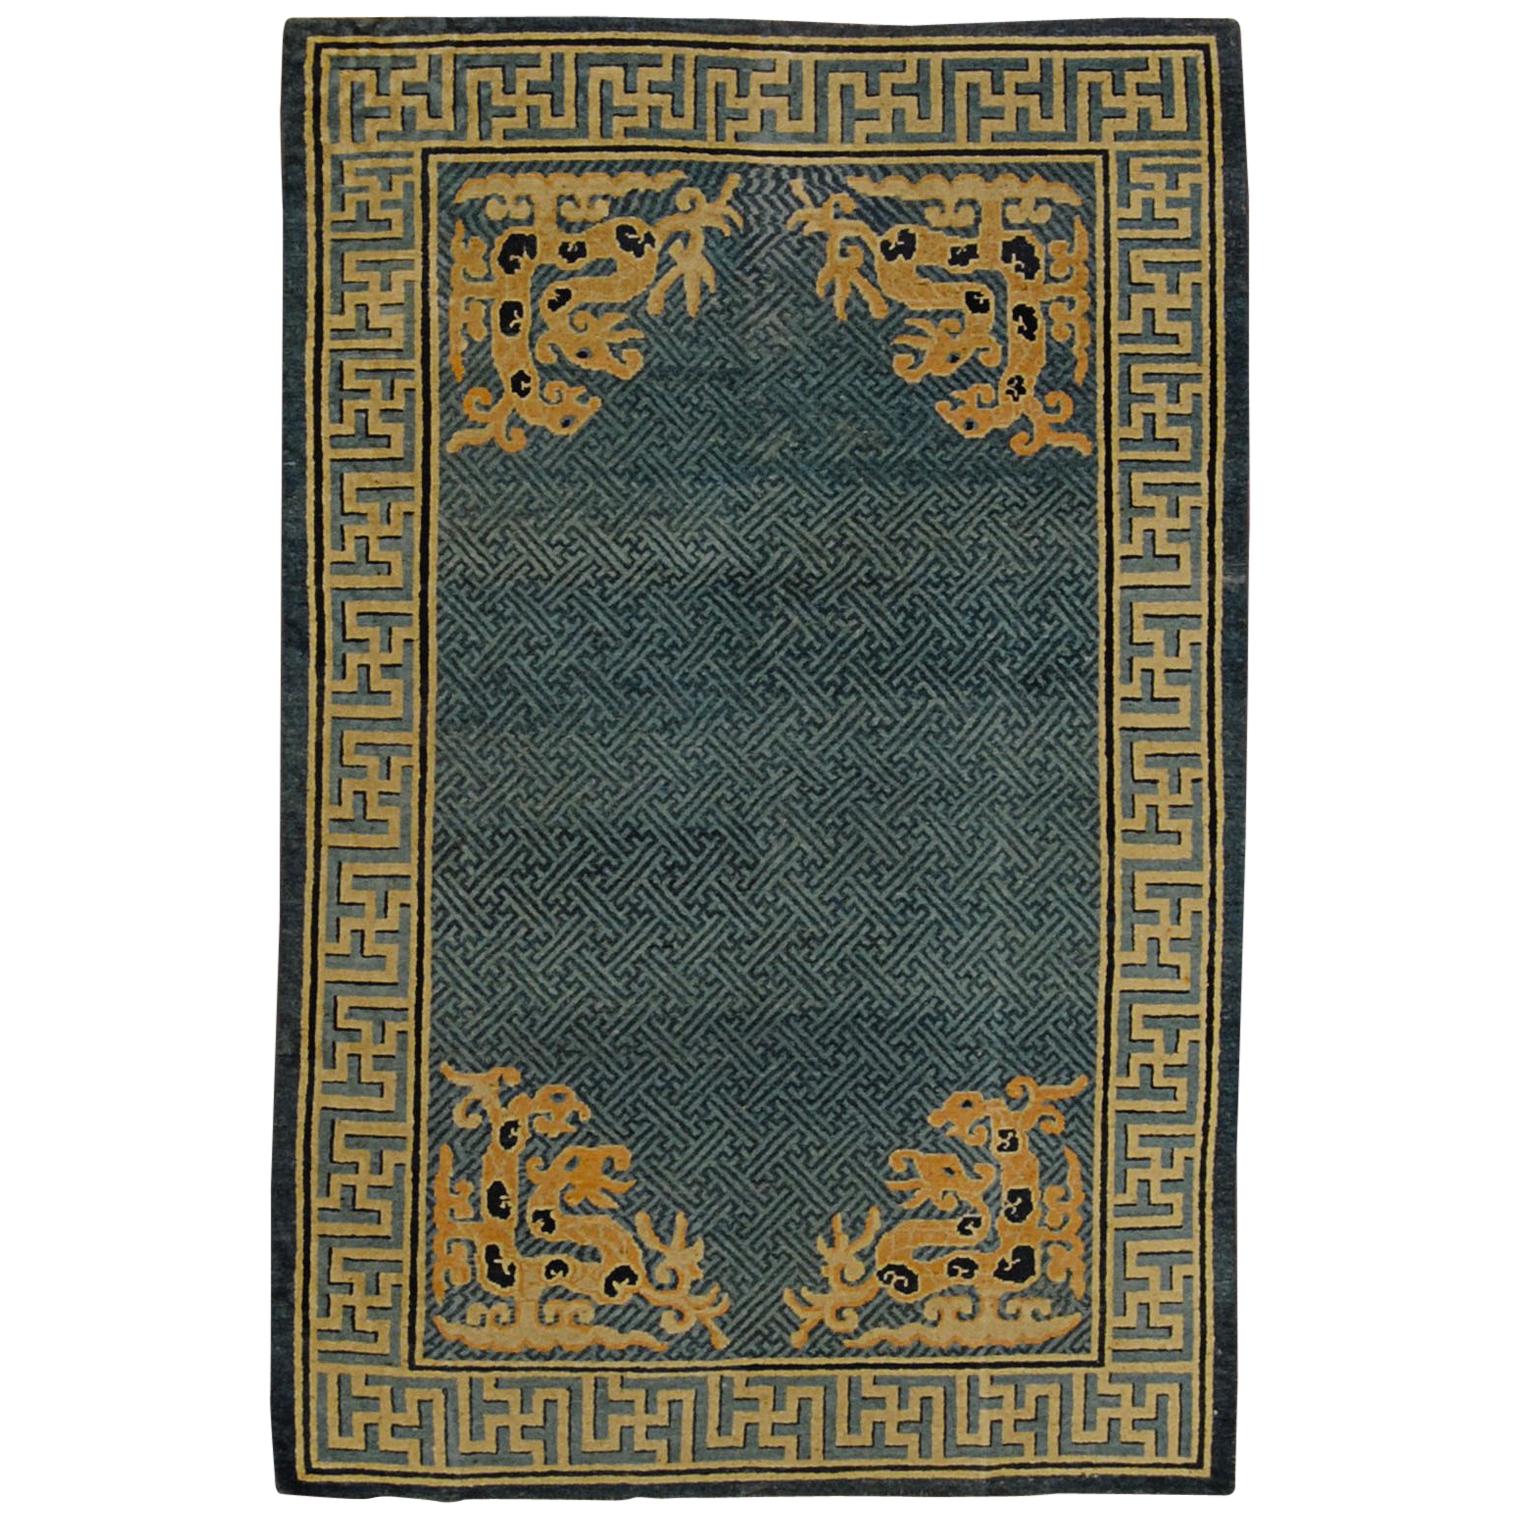 Chinesischer handgeknüpfter Teppich des 19. Jahrhunderts in Blau und Beige mit stilisierten spirituellen Drachen